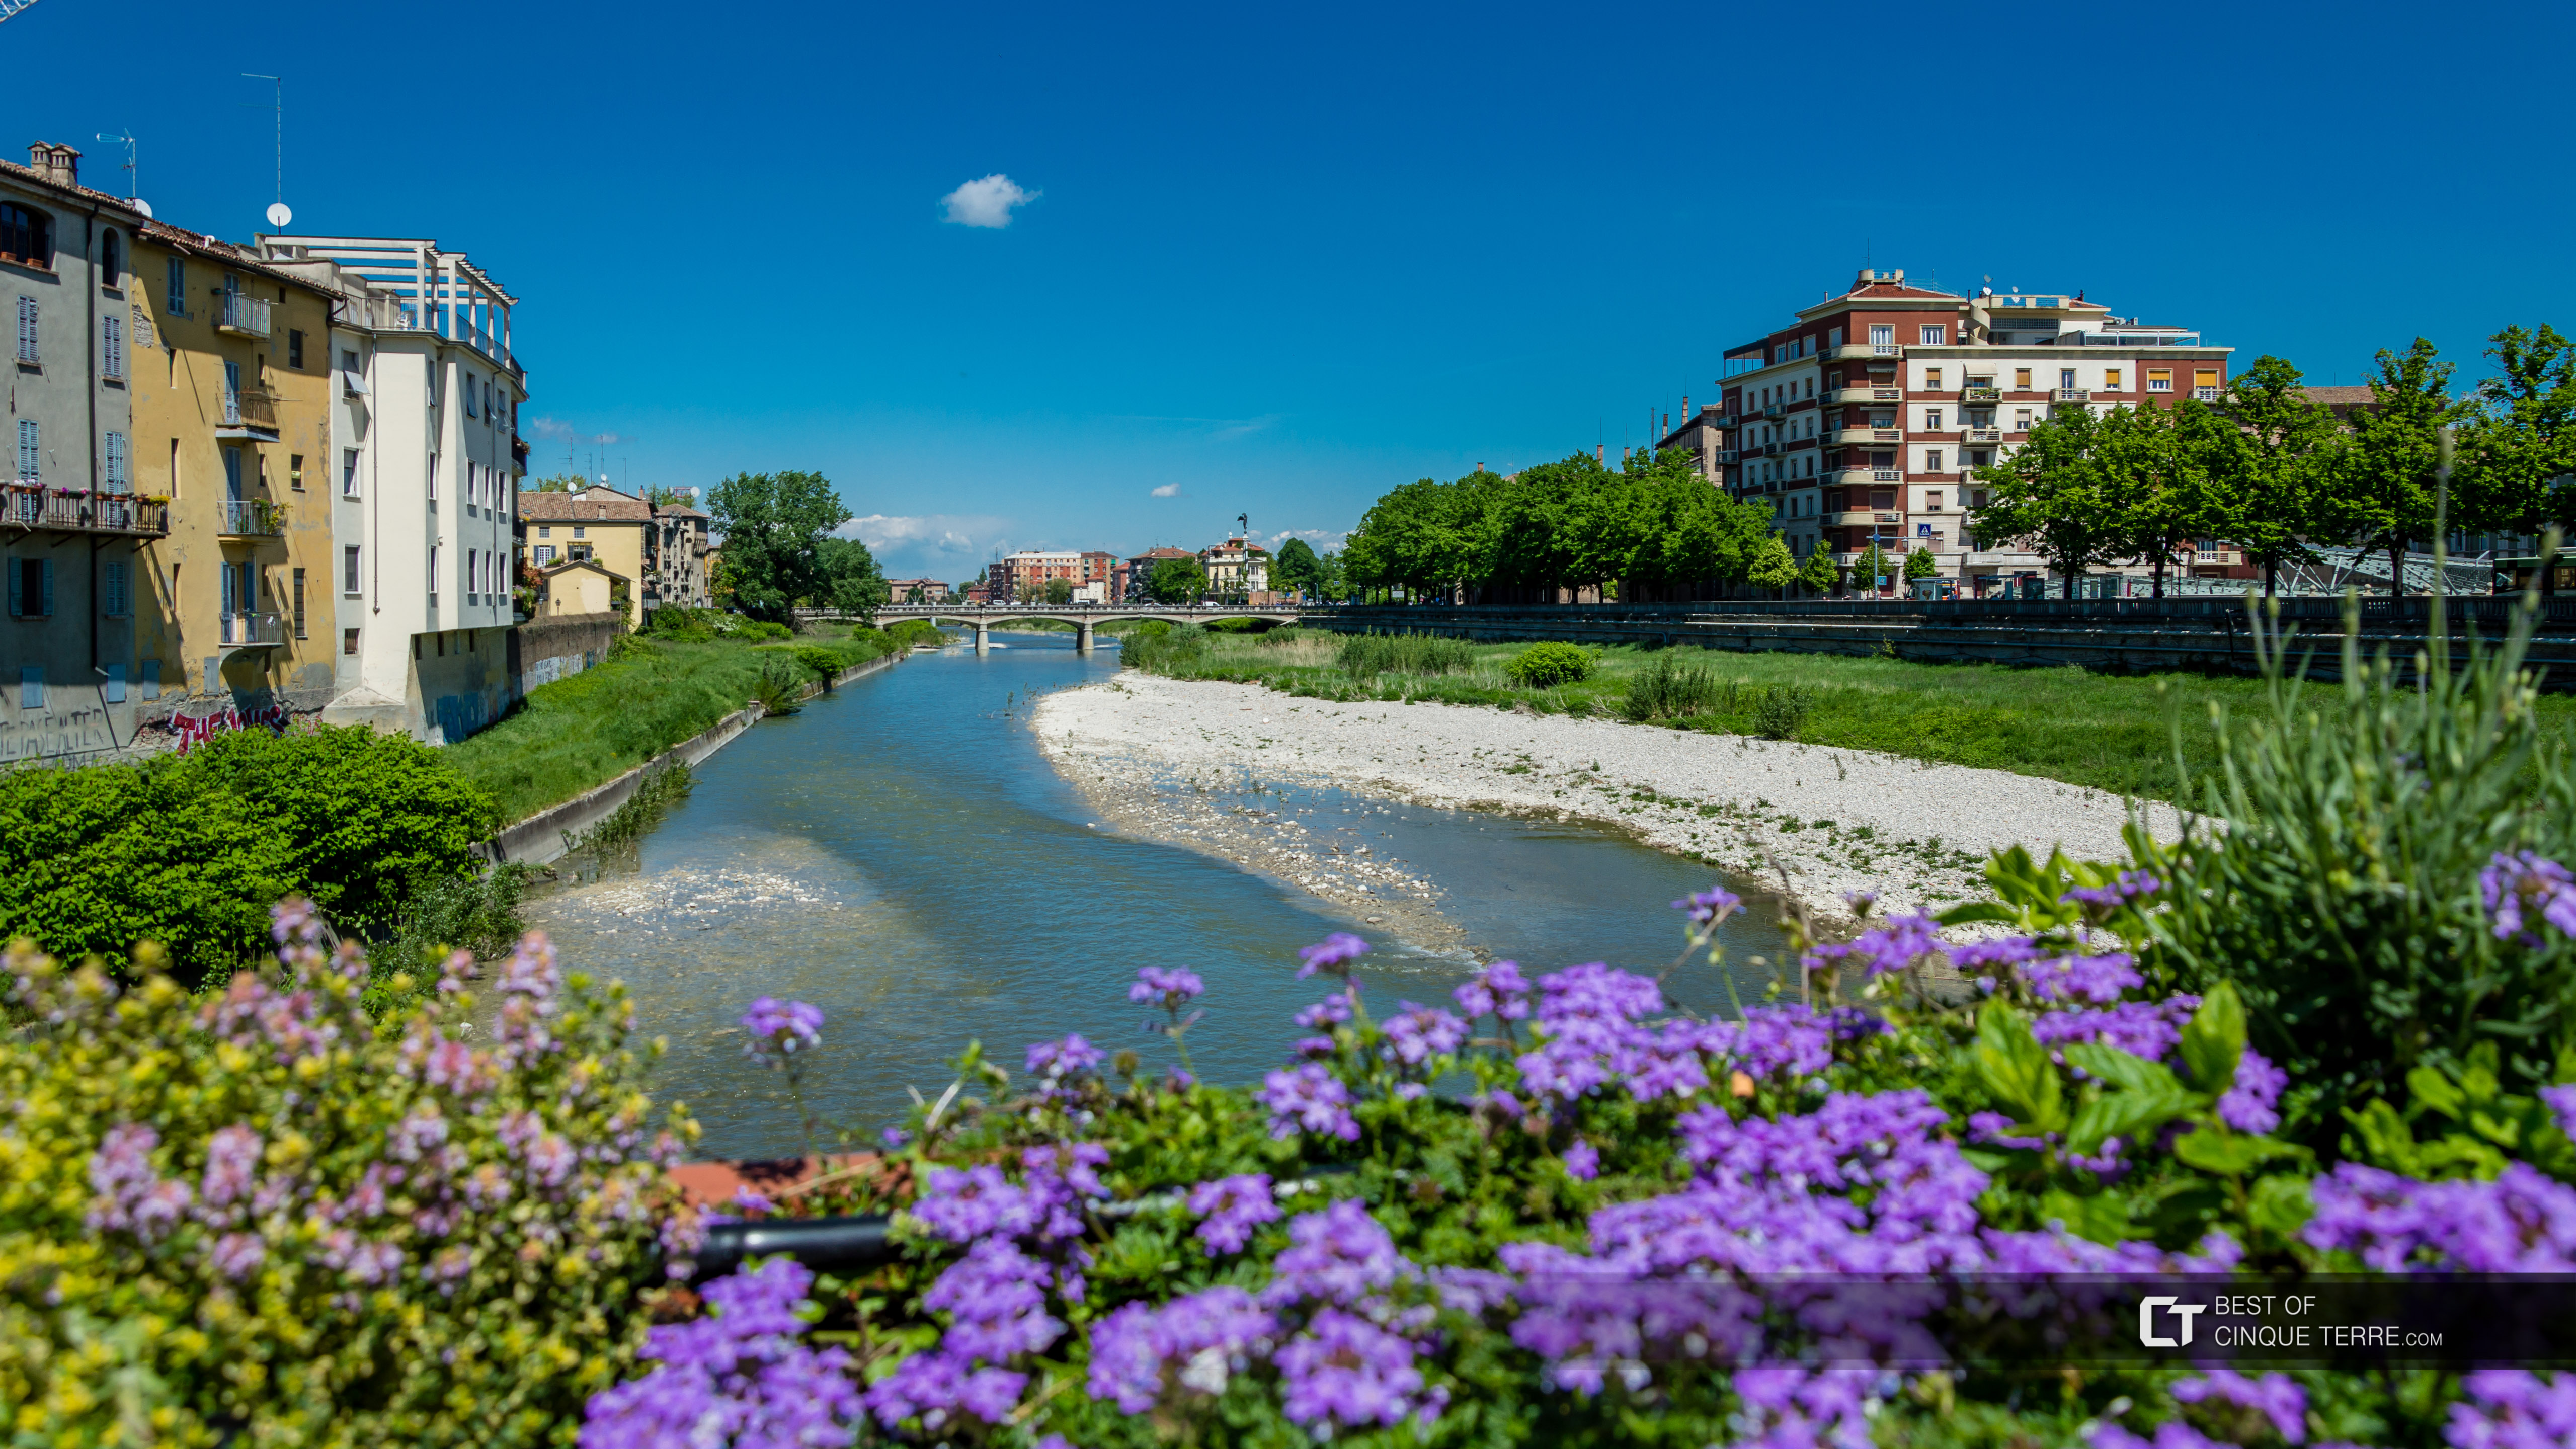 Vue de la rivière Parma depuis le pont di Mezzo, Parme, Italie